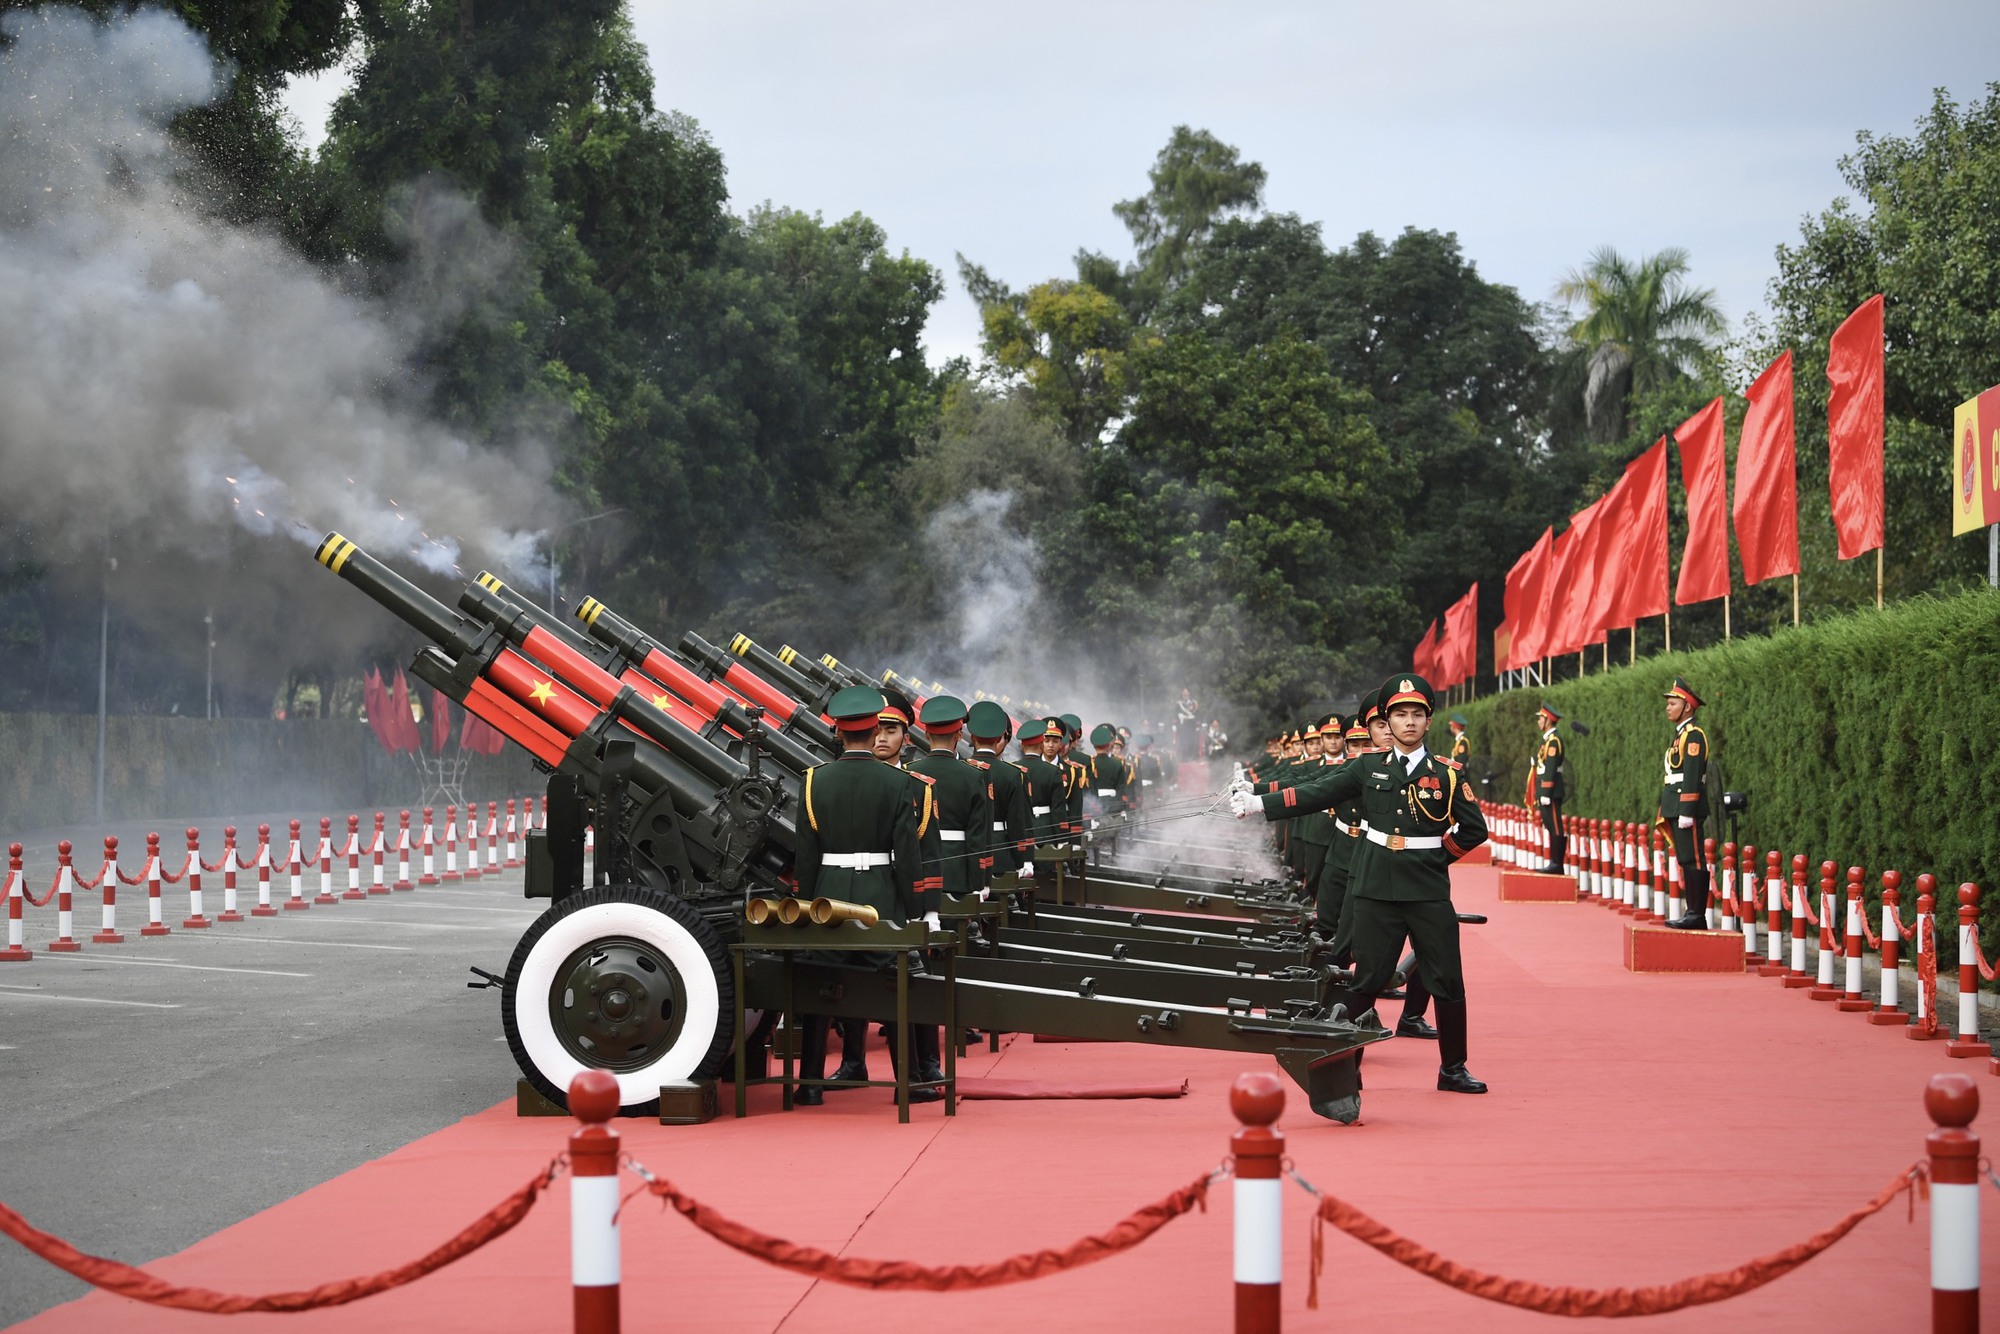 Cận cảnh nghi thức bắn 21 phát đại bác chào mừng Tổng bí thư, Chủ tịch Trung Quốc  - Ảnh 2.